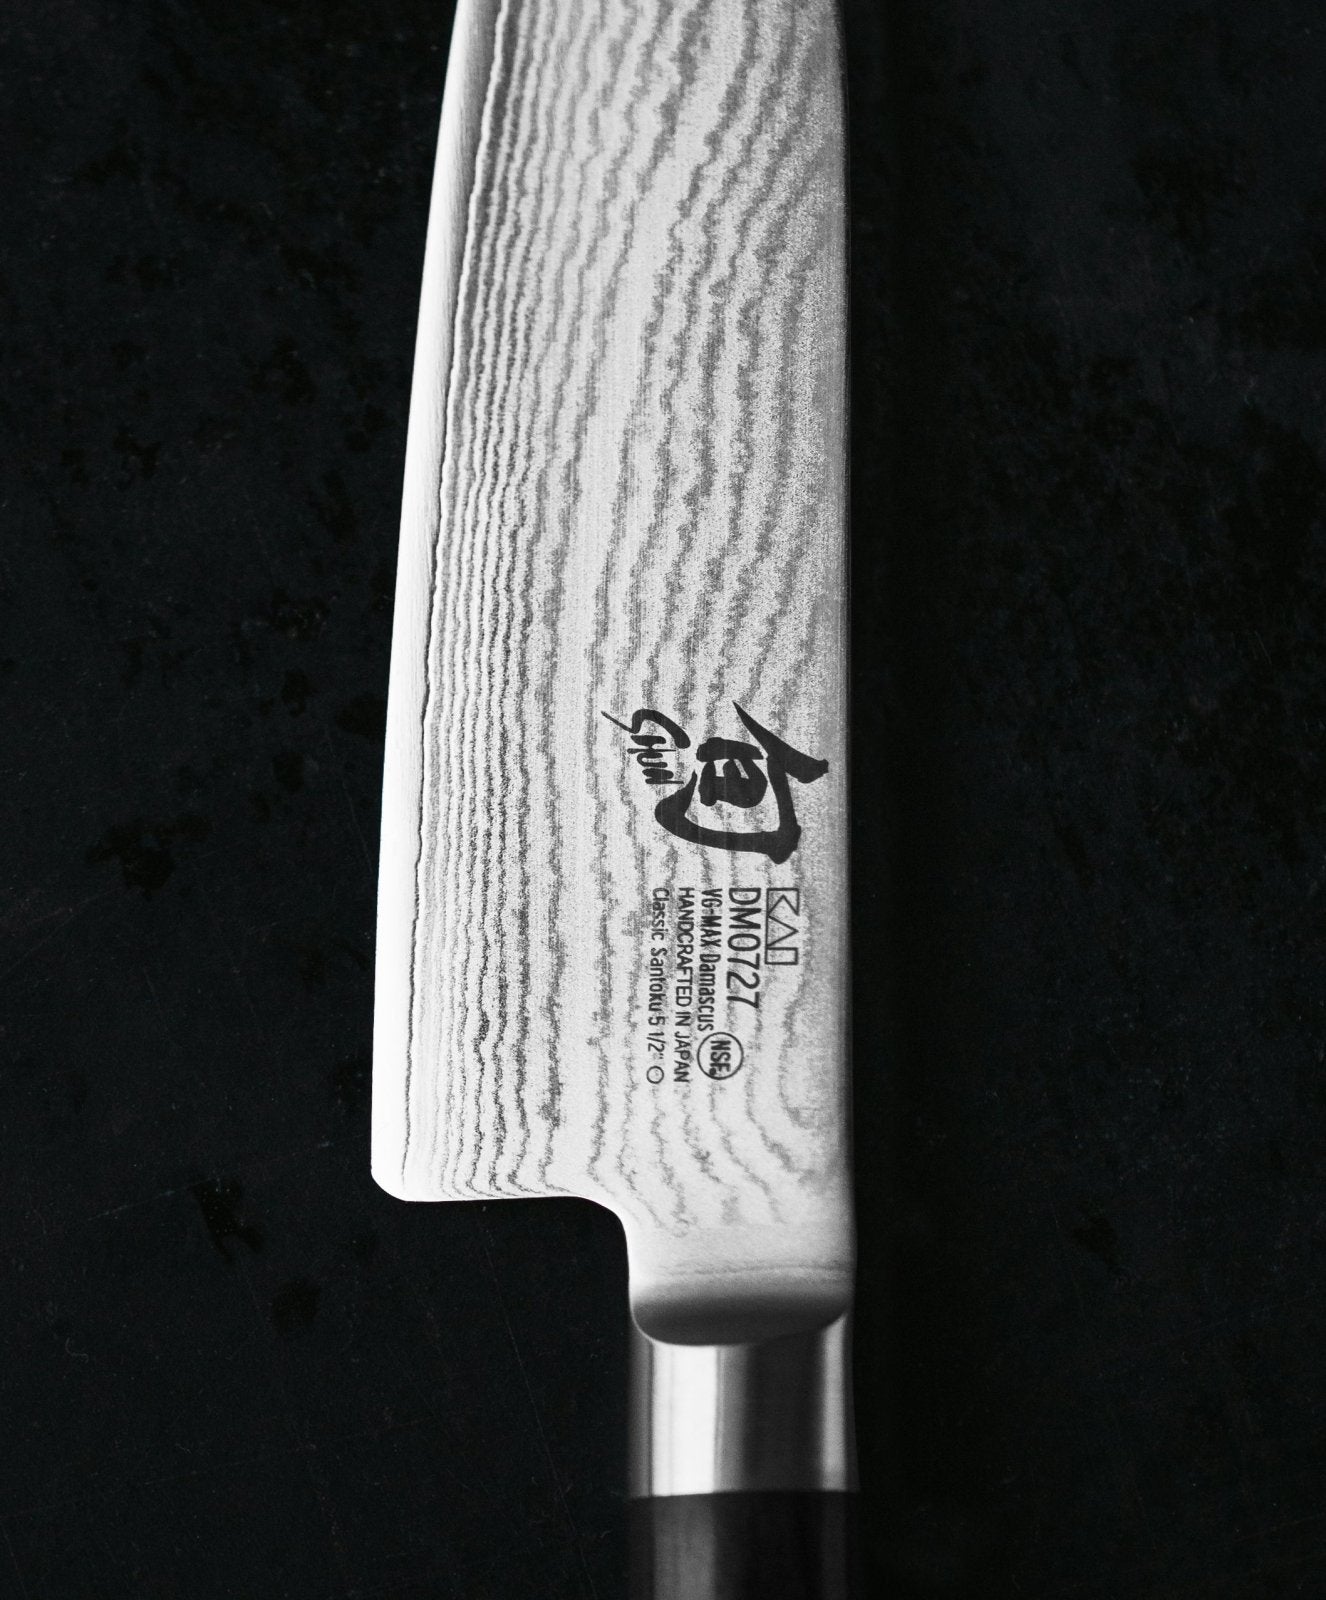 KAI Shun 6.5cm Peeling Knife - KAI-DM-0715 - The Cotswold Knife Company